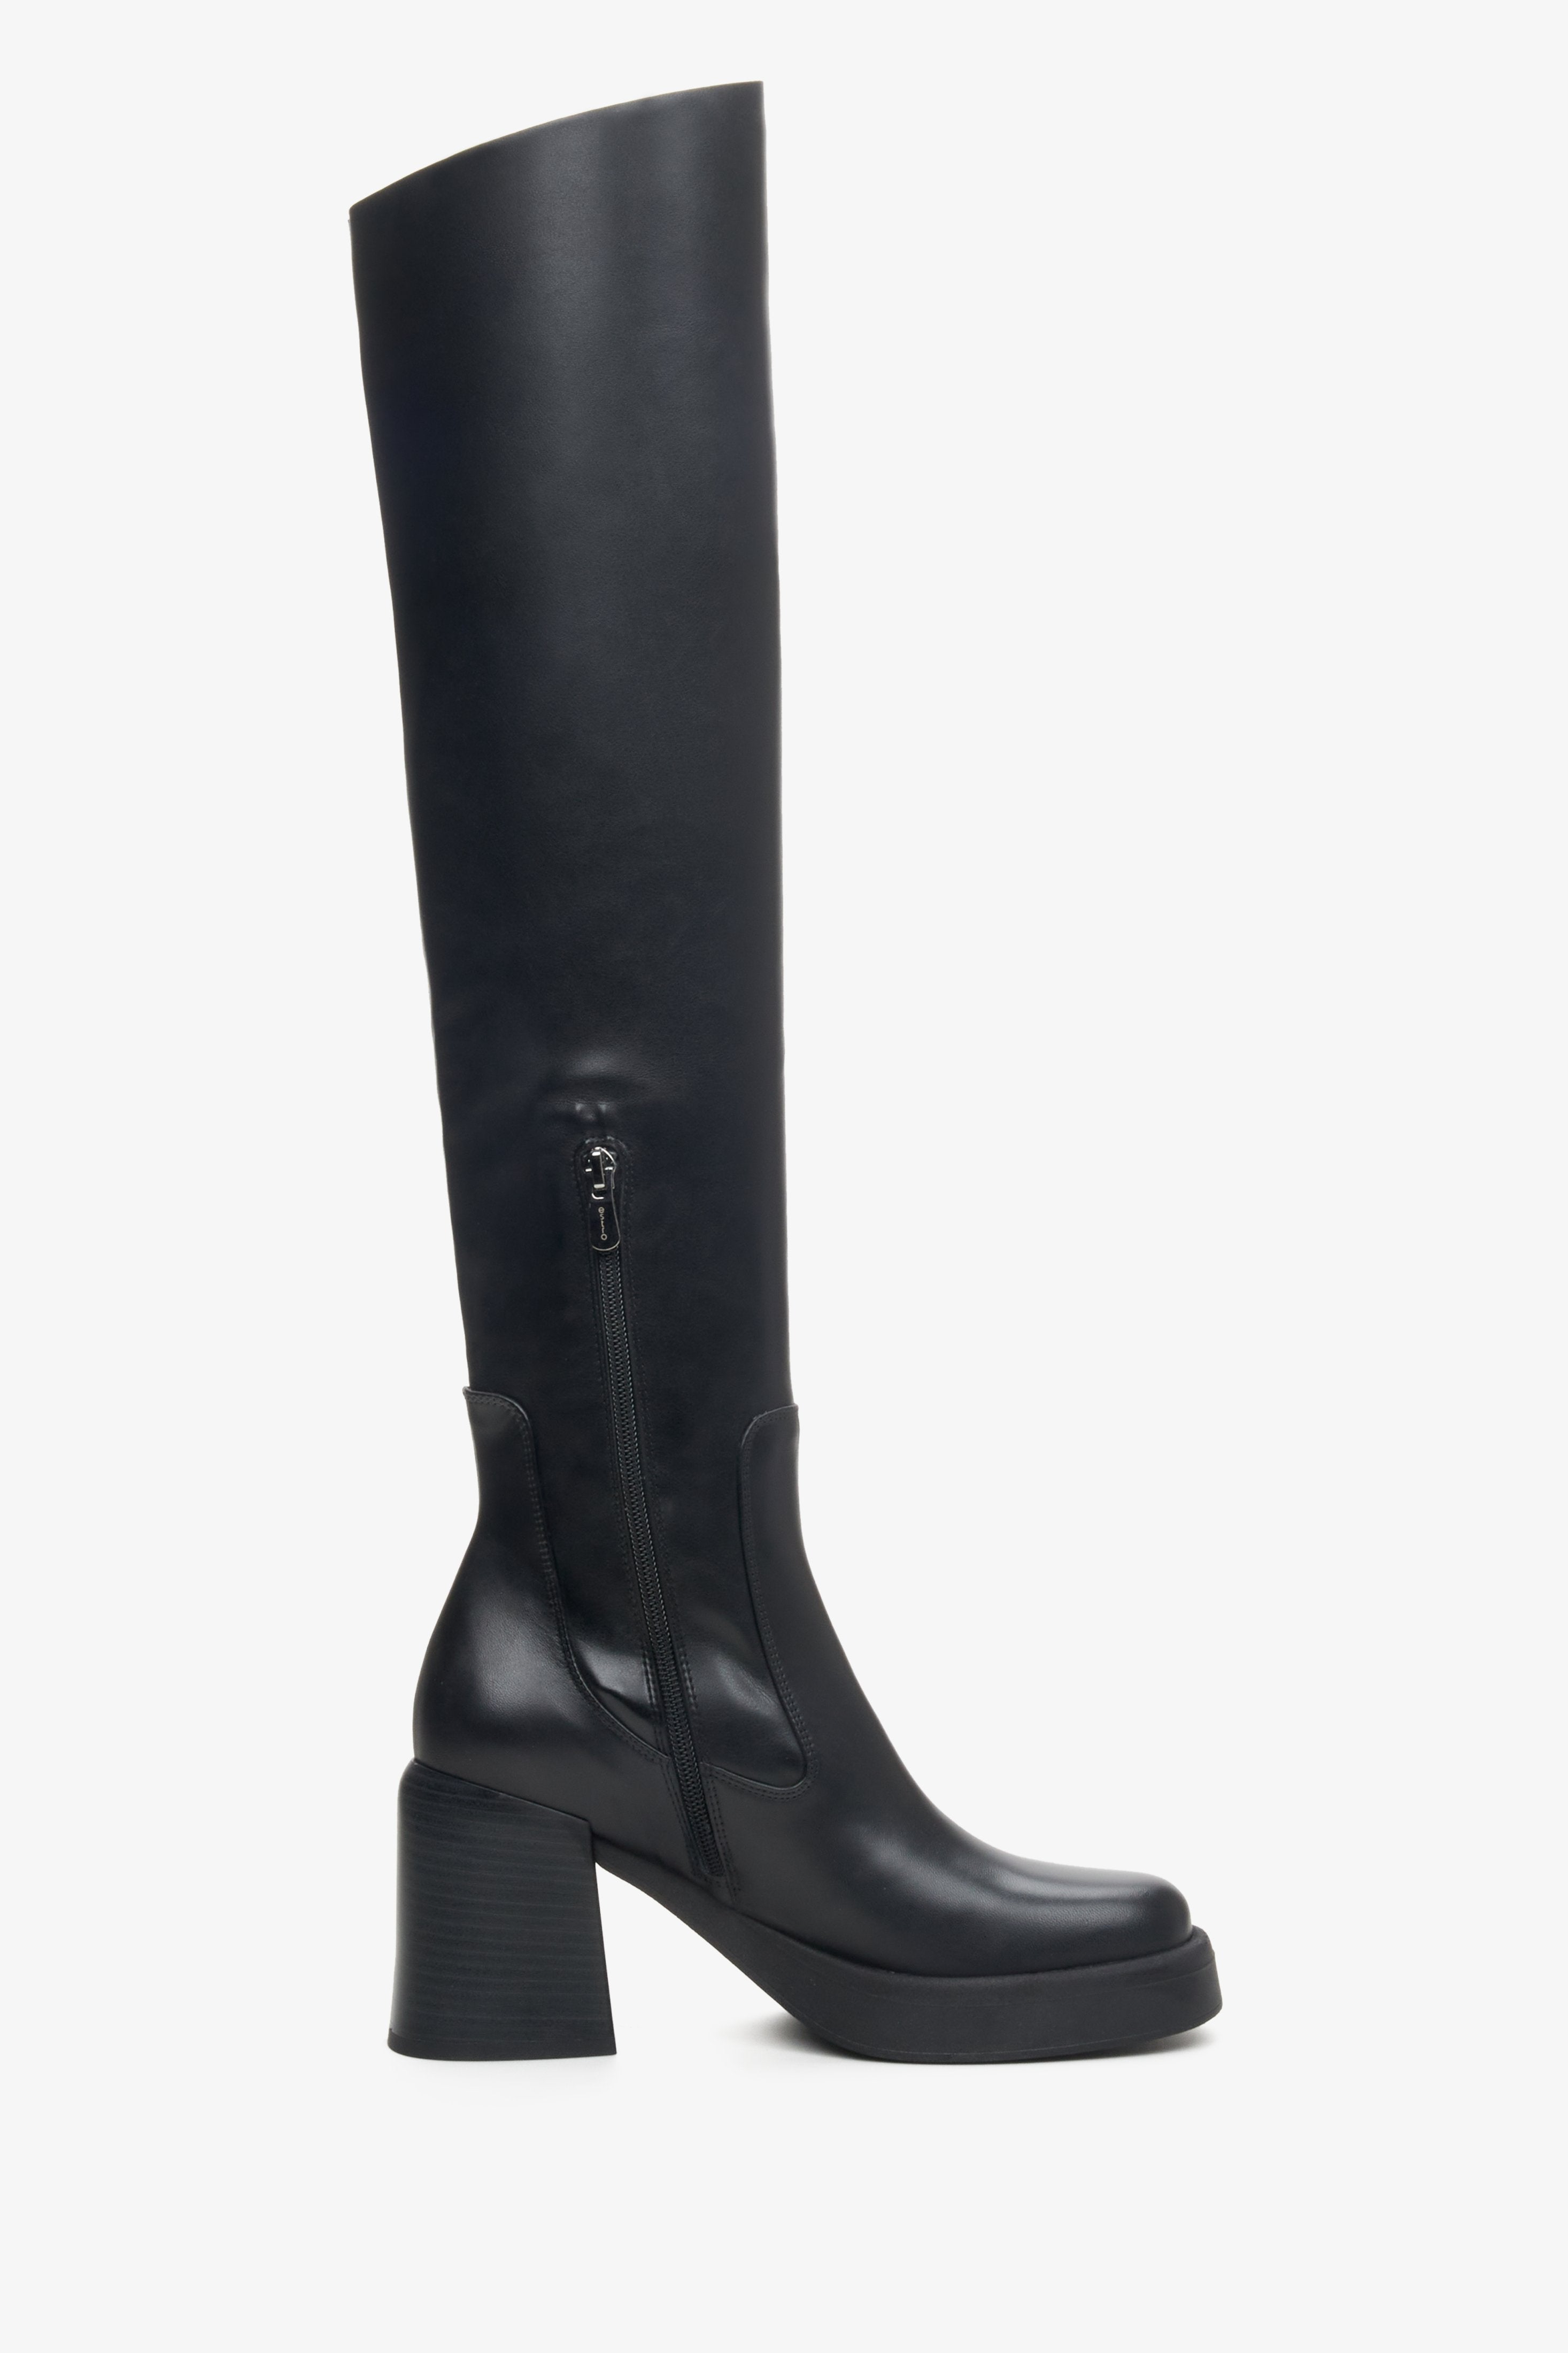 Damskie, czarne kozaki Estro z elastyczną cholewą nad kolano - profil buta.